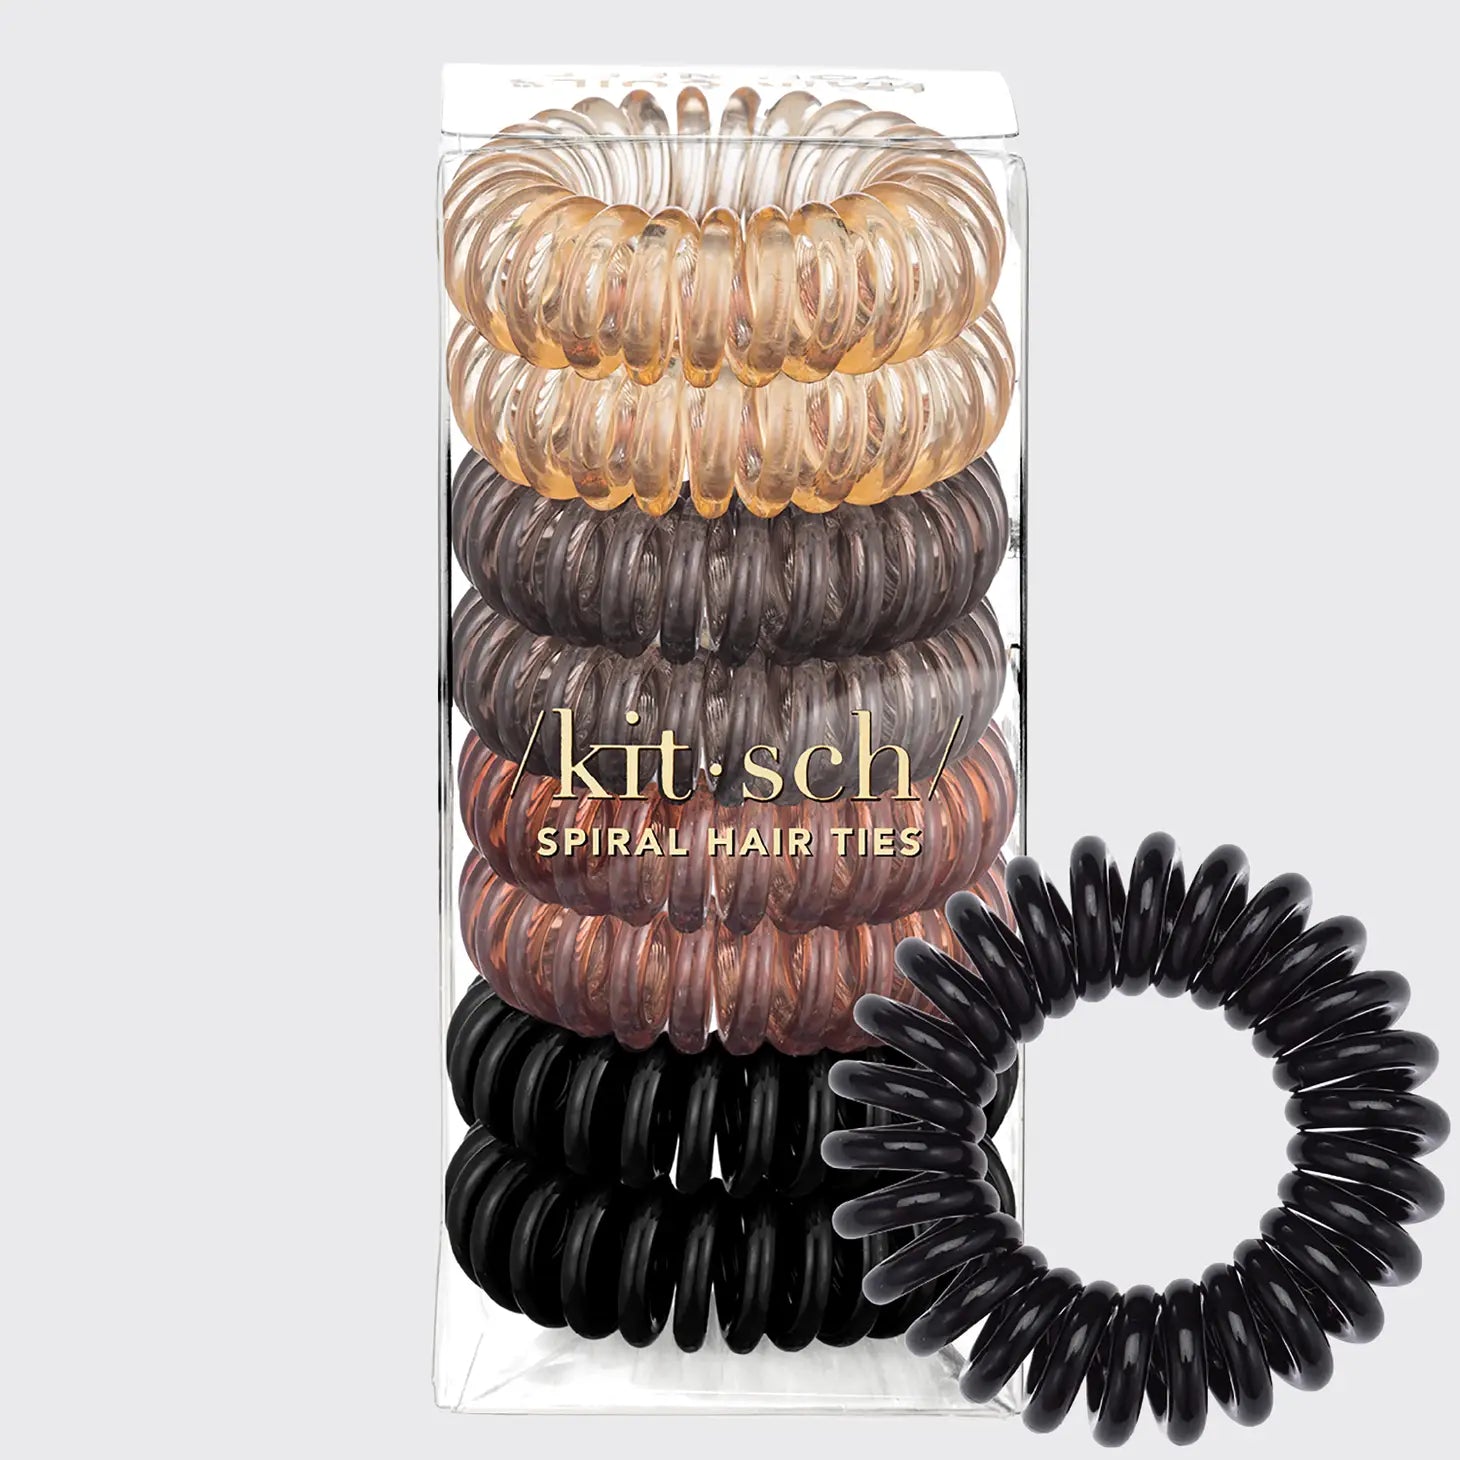 Spiral Hair Ties -8 pack